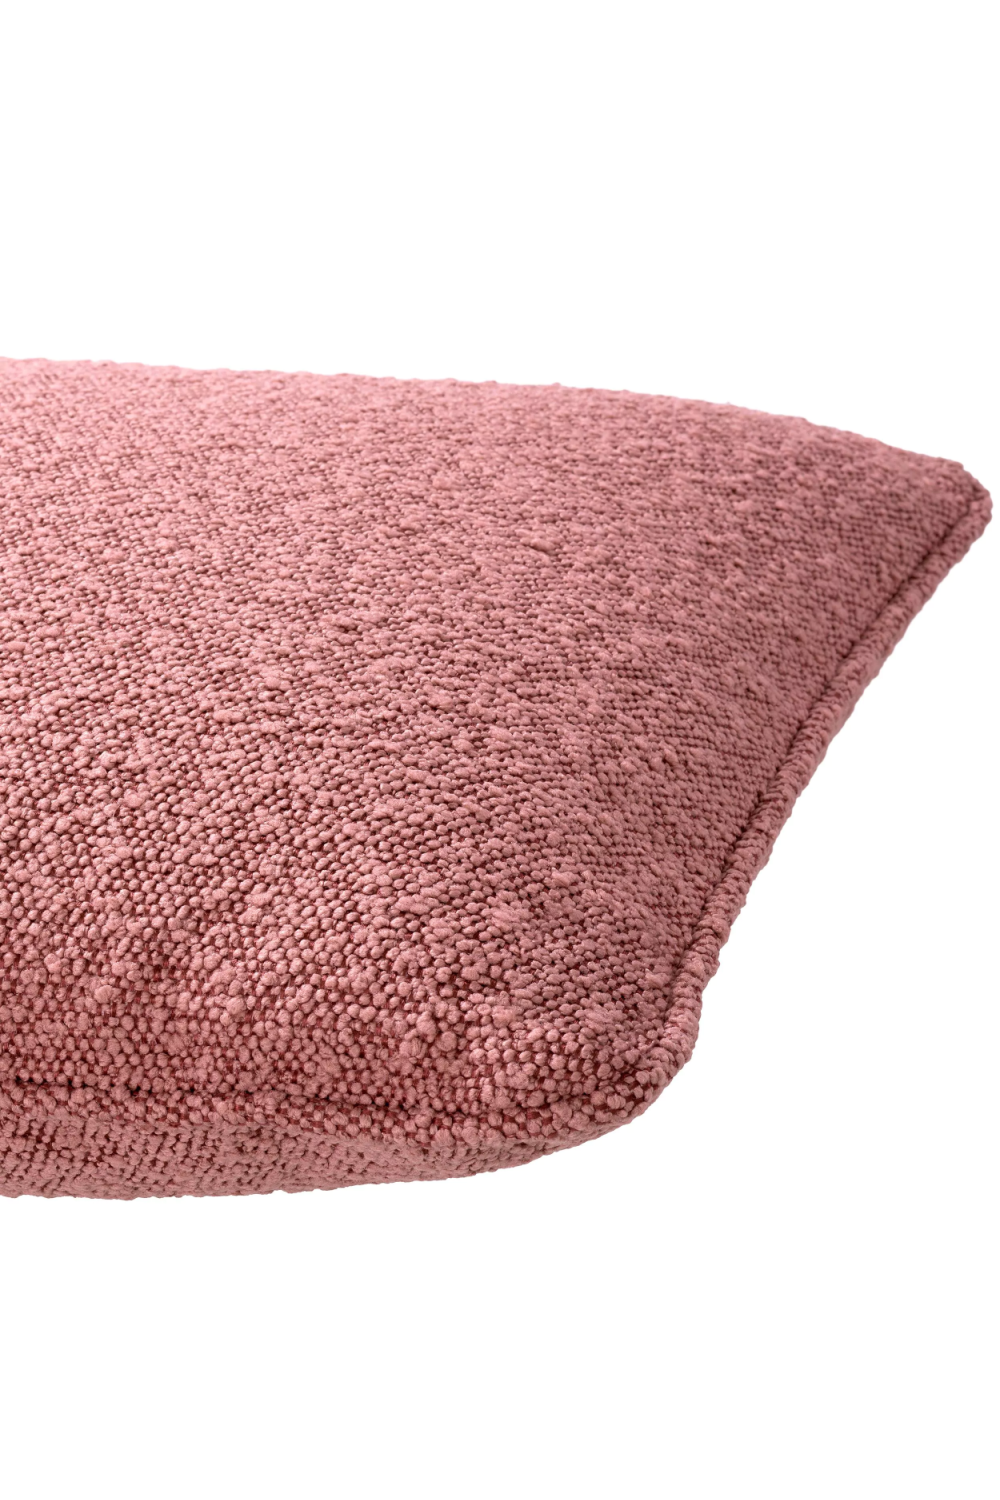 Pink Boucle Throw Pillow | Eichholtz | Oroa.com